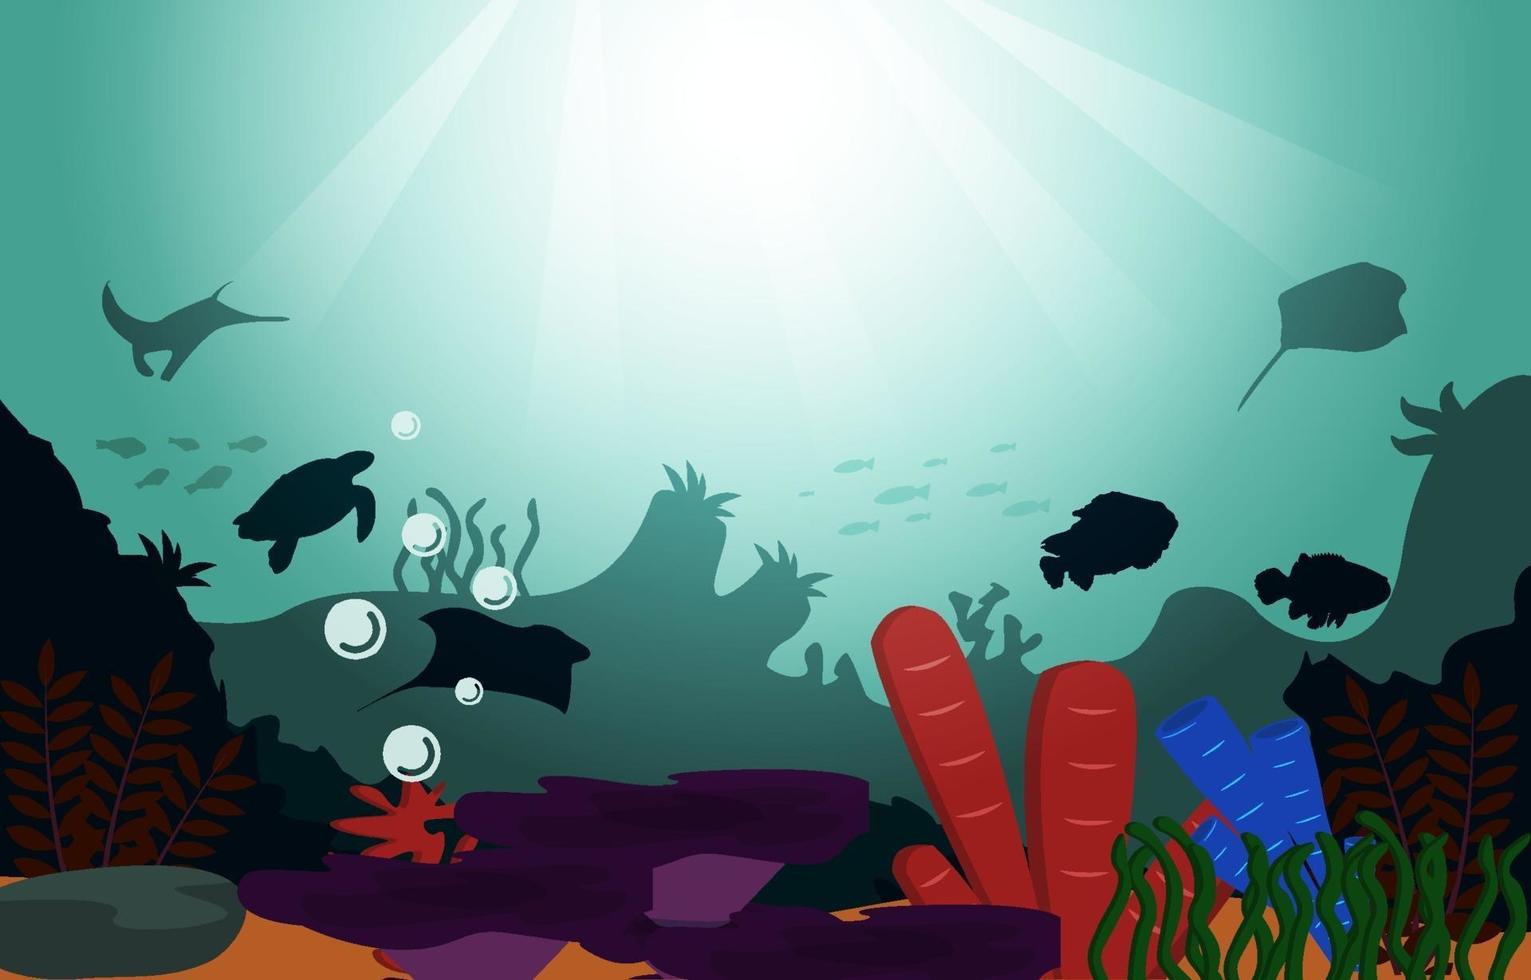 vida silvestre peces animales marinos coral océano submarino ilustración acuática vector